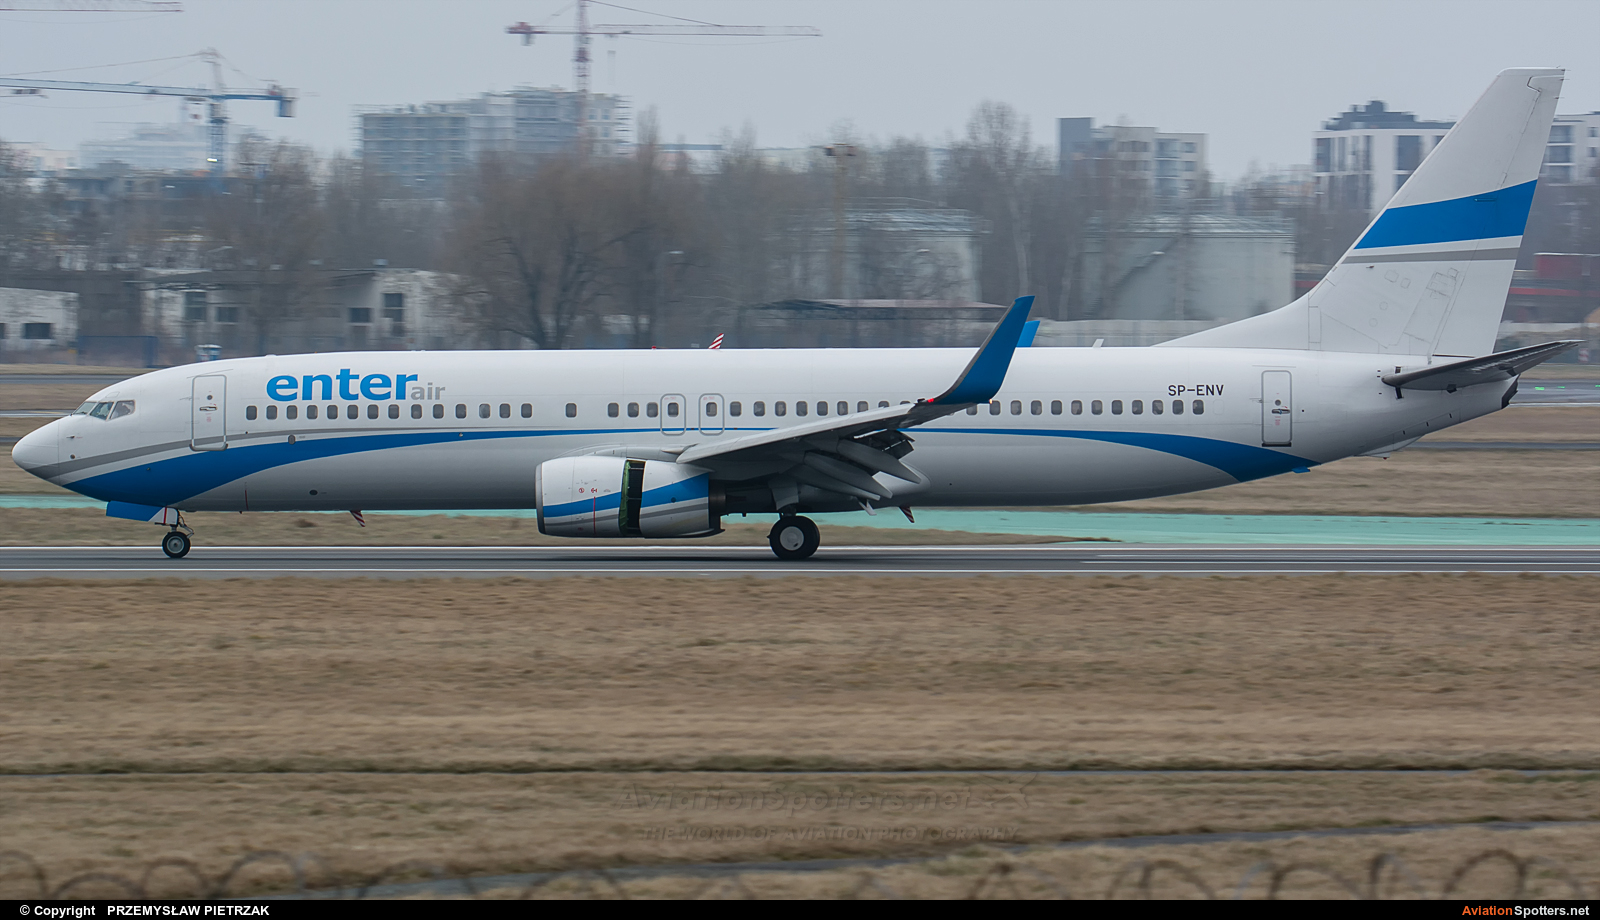 Enter Air  -  737-800  (SP-ENV) By PRZEMYSŁAW PIETRZAK (PEPE74)